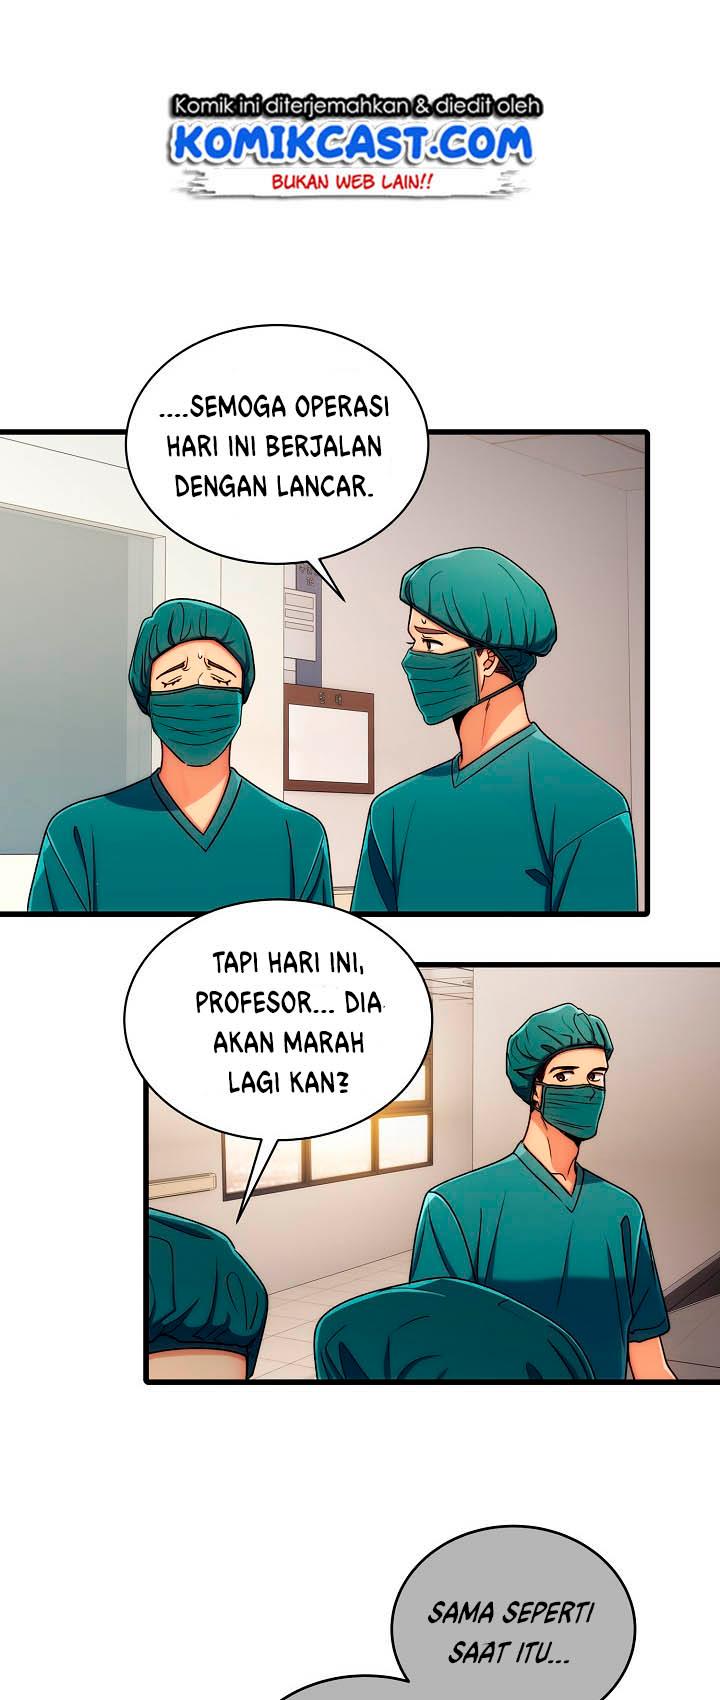 Medical Return Chapter 48